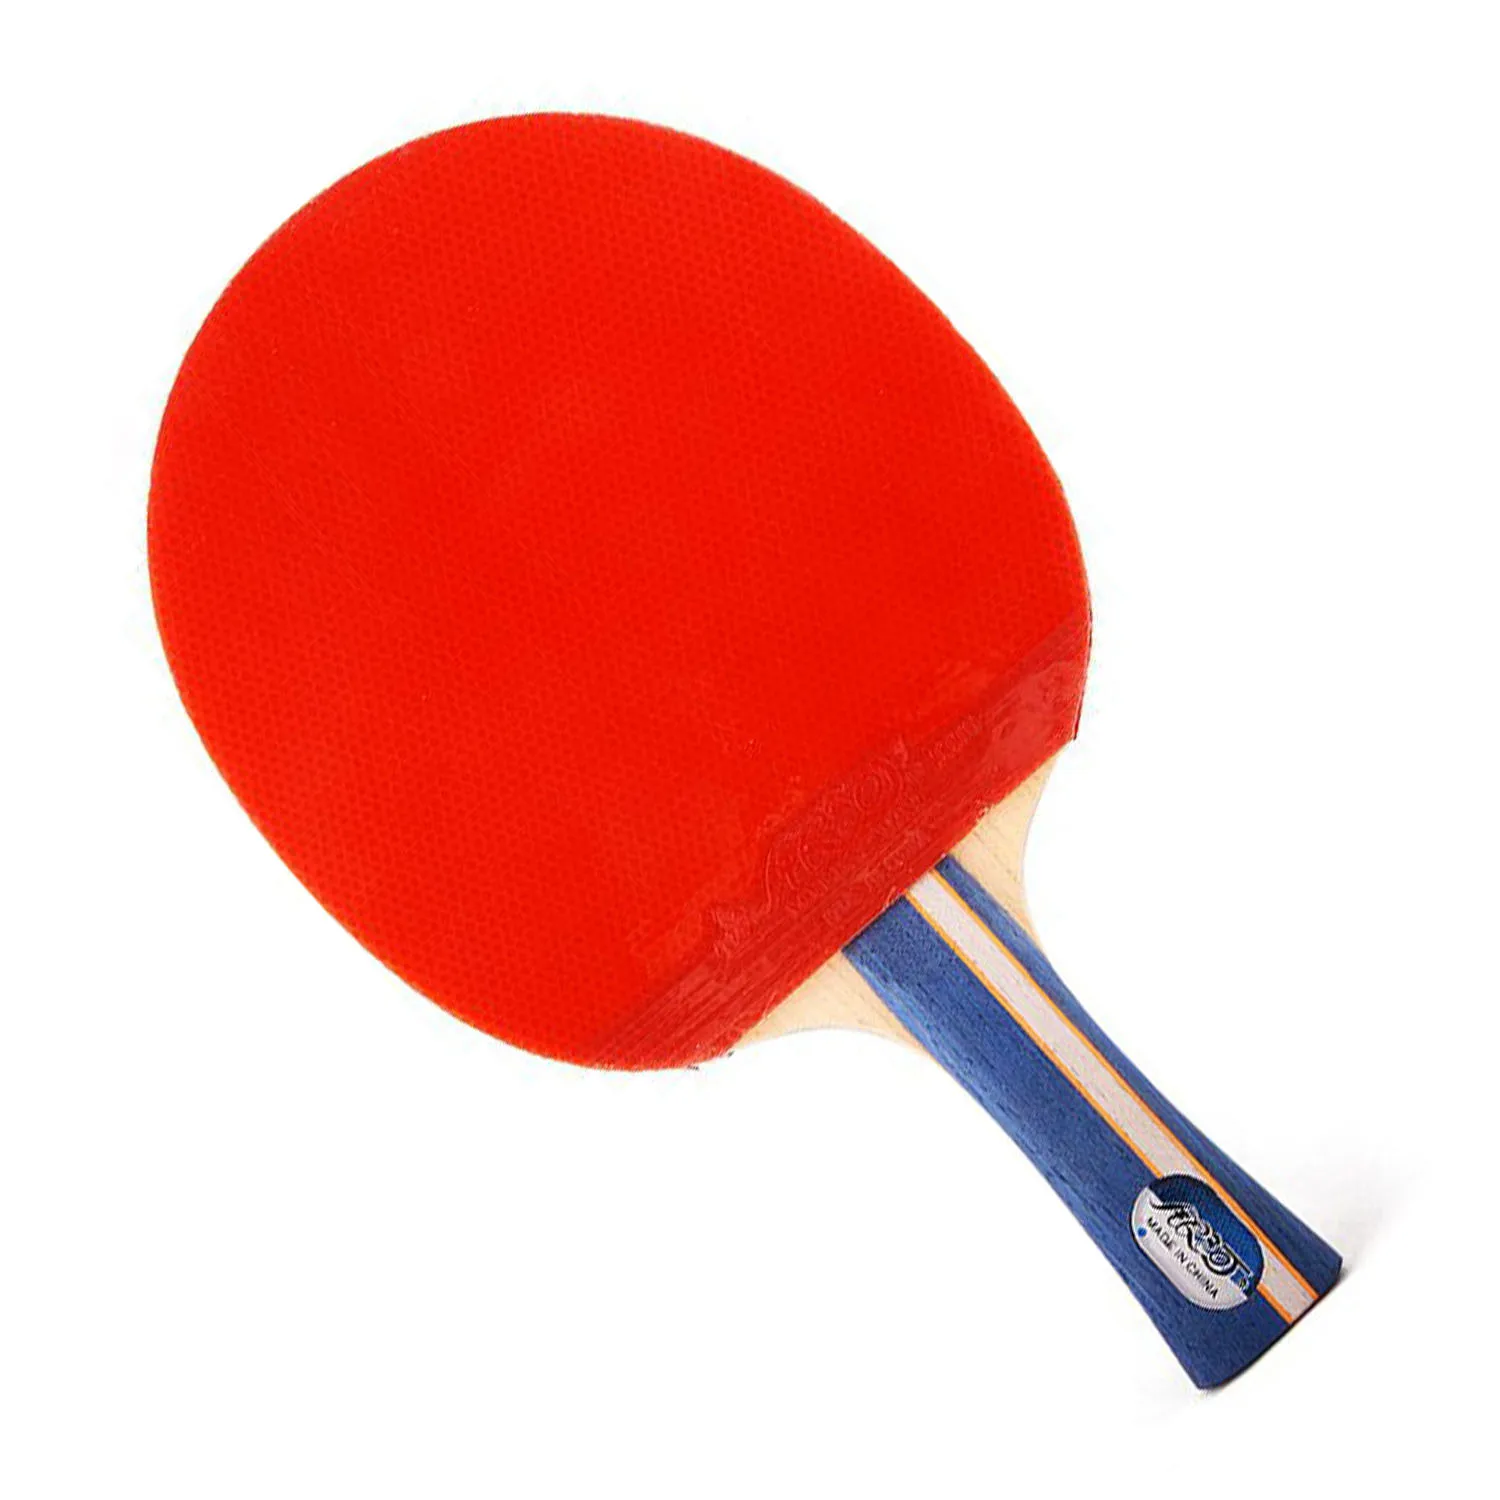 

Ракетки для настольного тенниса Galaxy yinhe 05b/05d, готовые спортивные ракетки для пинг-понга, резиновые ракетки